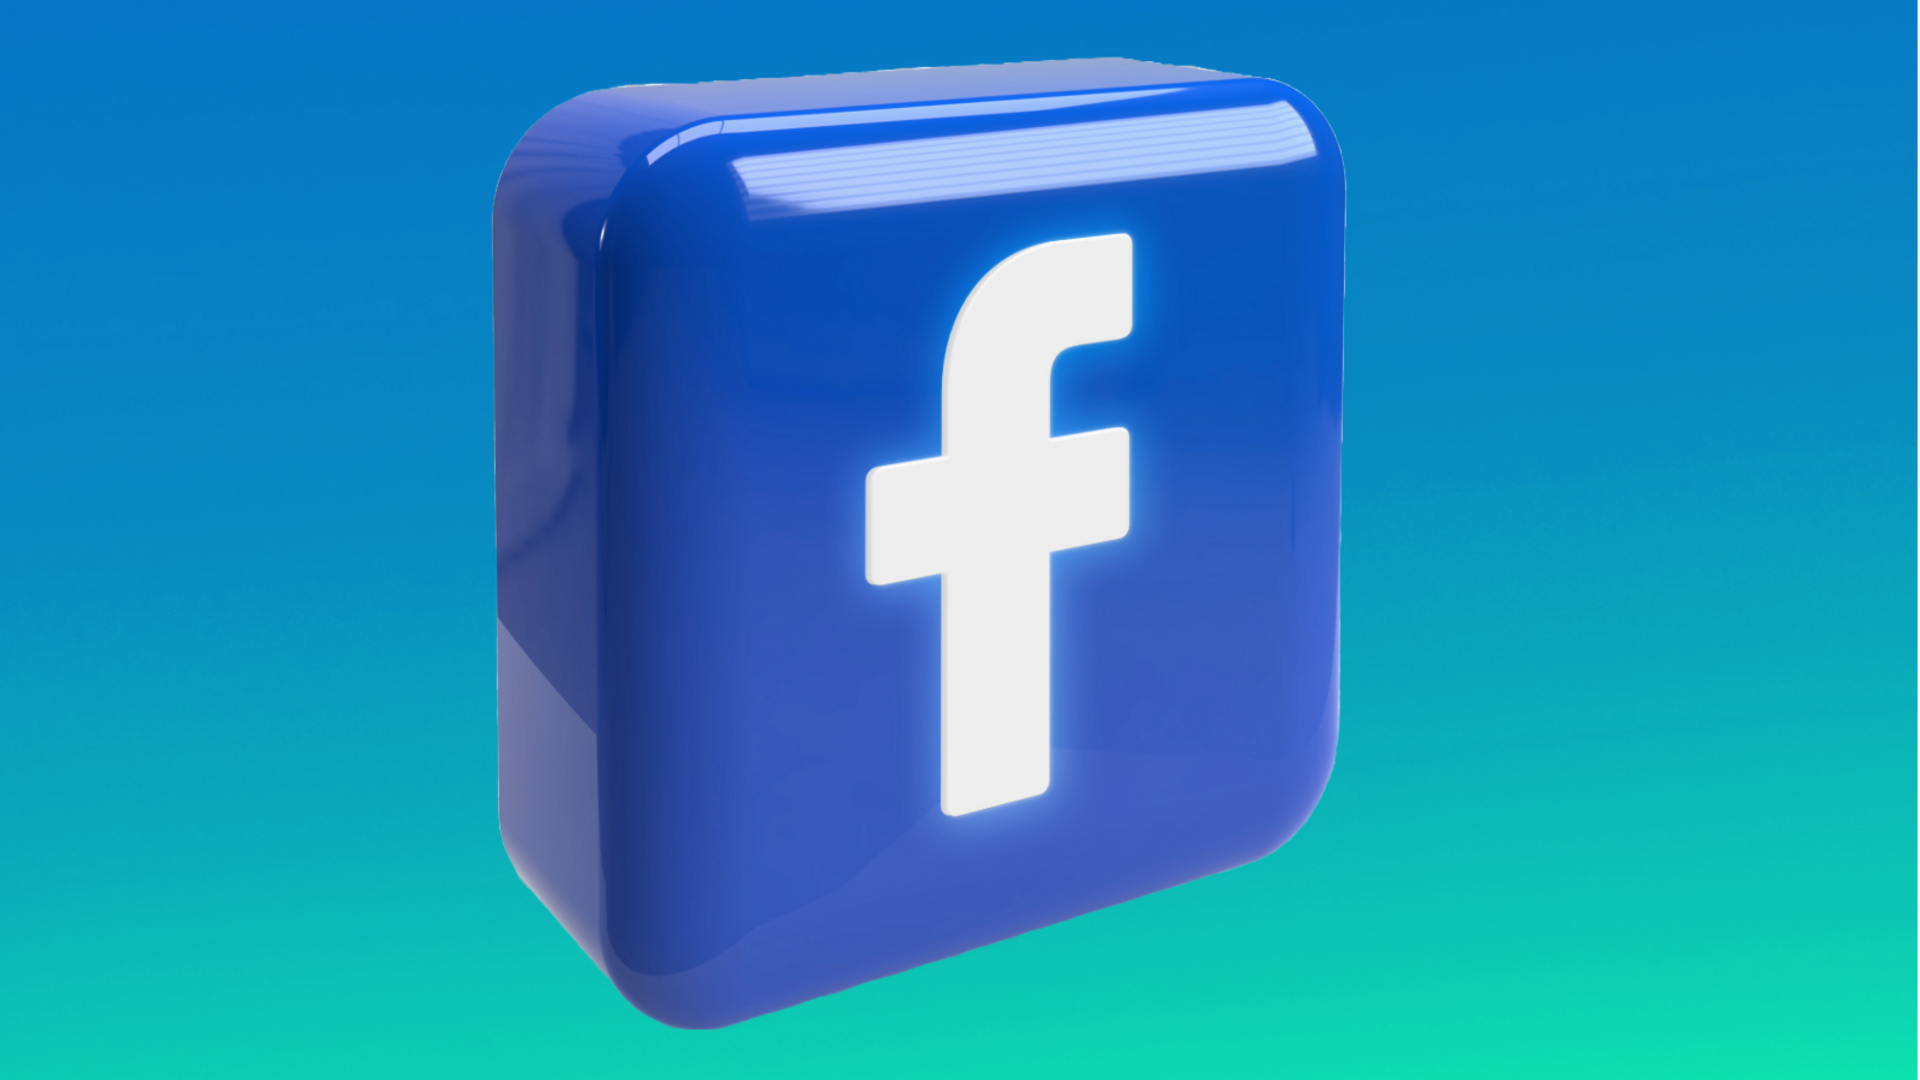 फेसबुक पर नहीं दिखेंगे समाचार, कंपनी बंद करने जा रही है न्यूज टैब